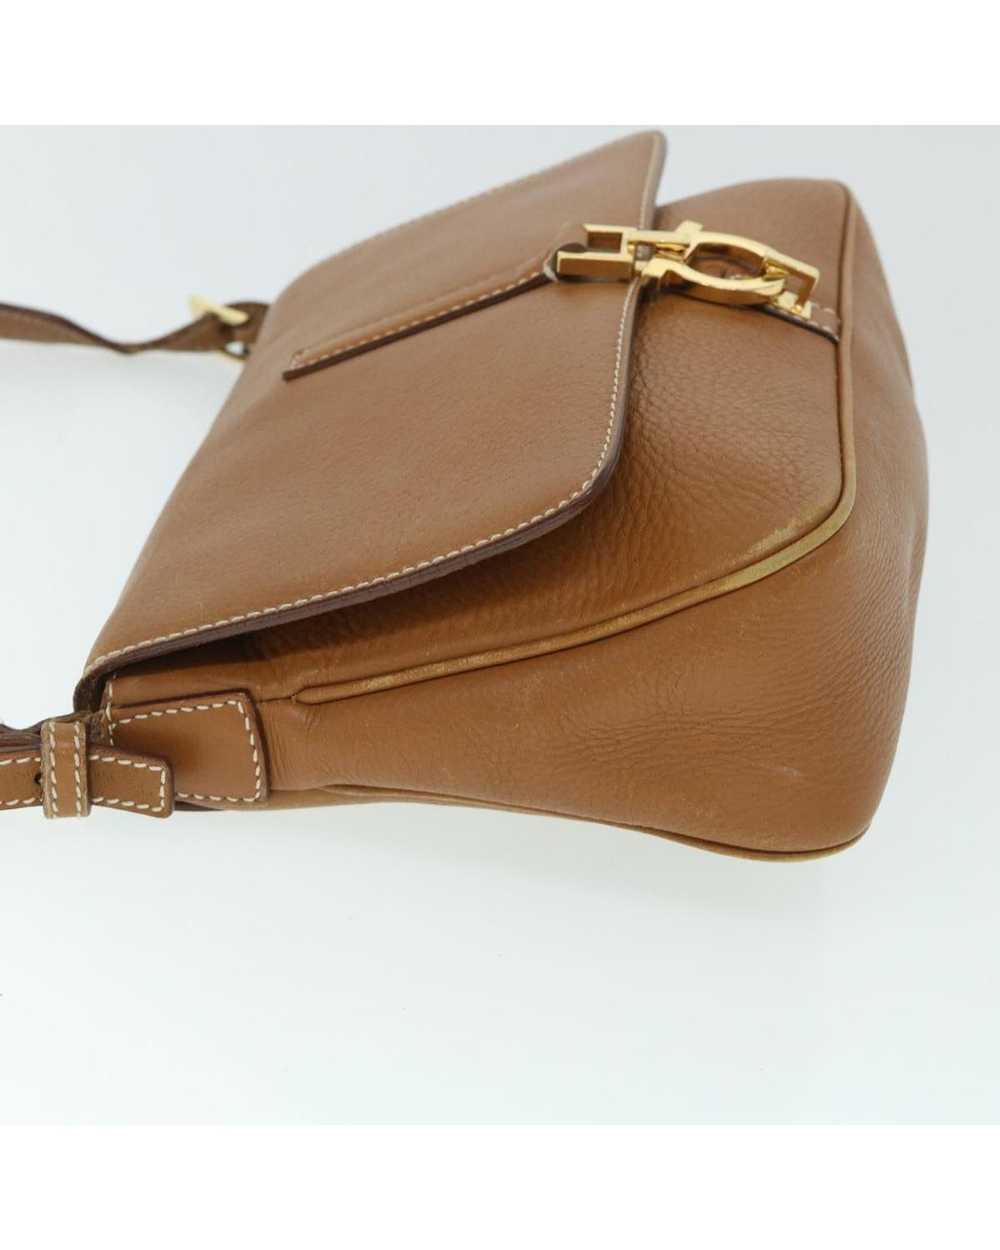 Salvatore Ferragamo Elegant Brown Leather Bag - image 5